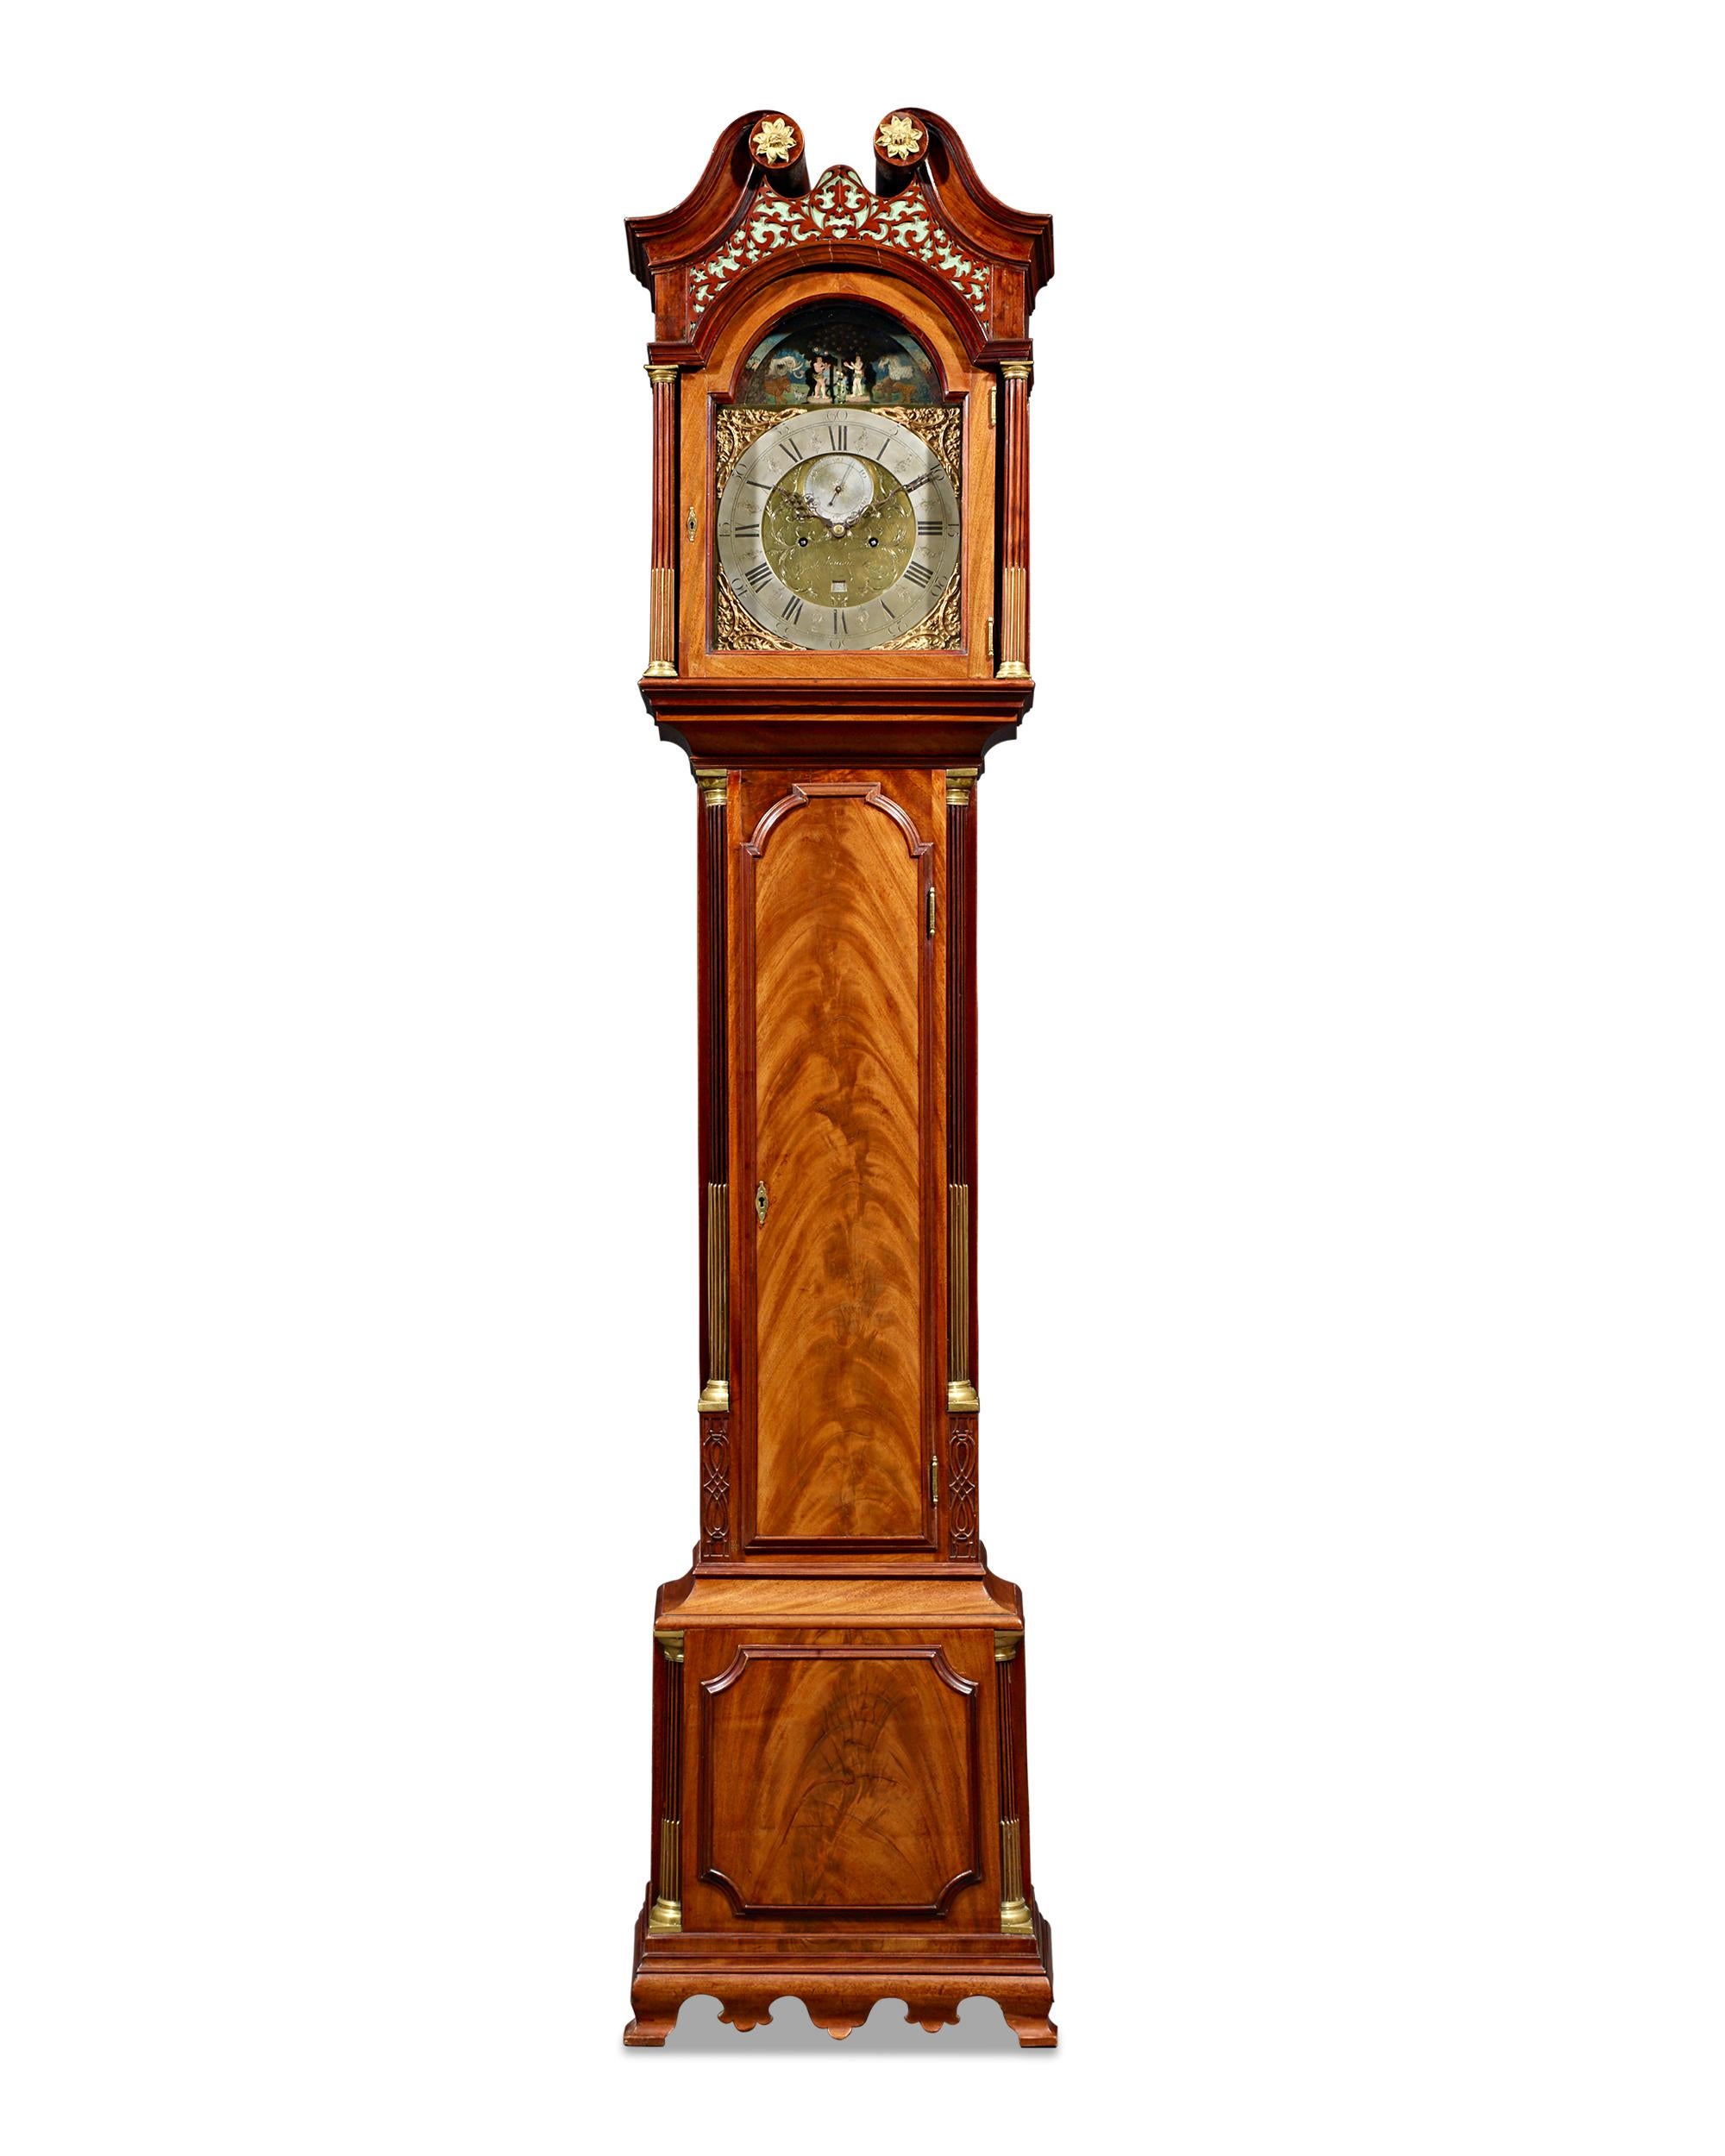 Diese bedeutende Standuhr des Londoner Uhrmachers James Fenton ist ein majestätisches Beispiel für englische Uhrmacherkunst und zeigt über dem Zifferblatt einen außergewöhnlichen Adam-und-Eva-Automaten. Standuhren, die die Mechanik einer Uhr mit der